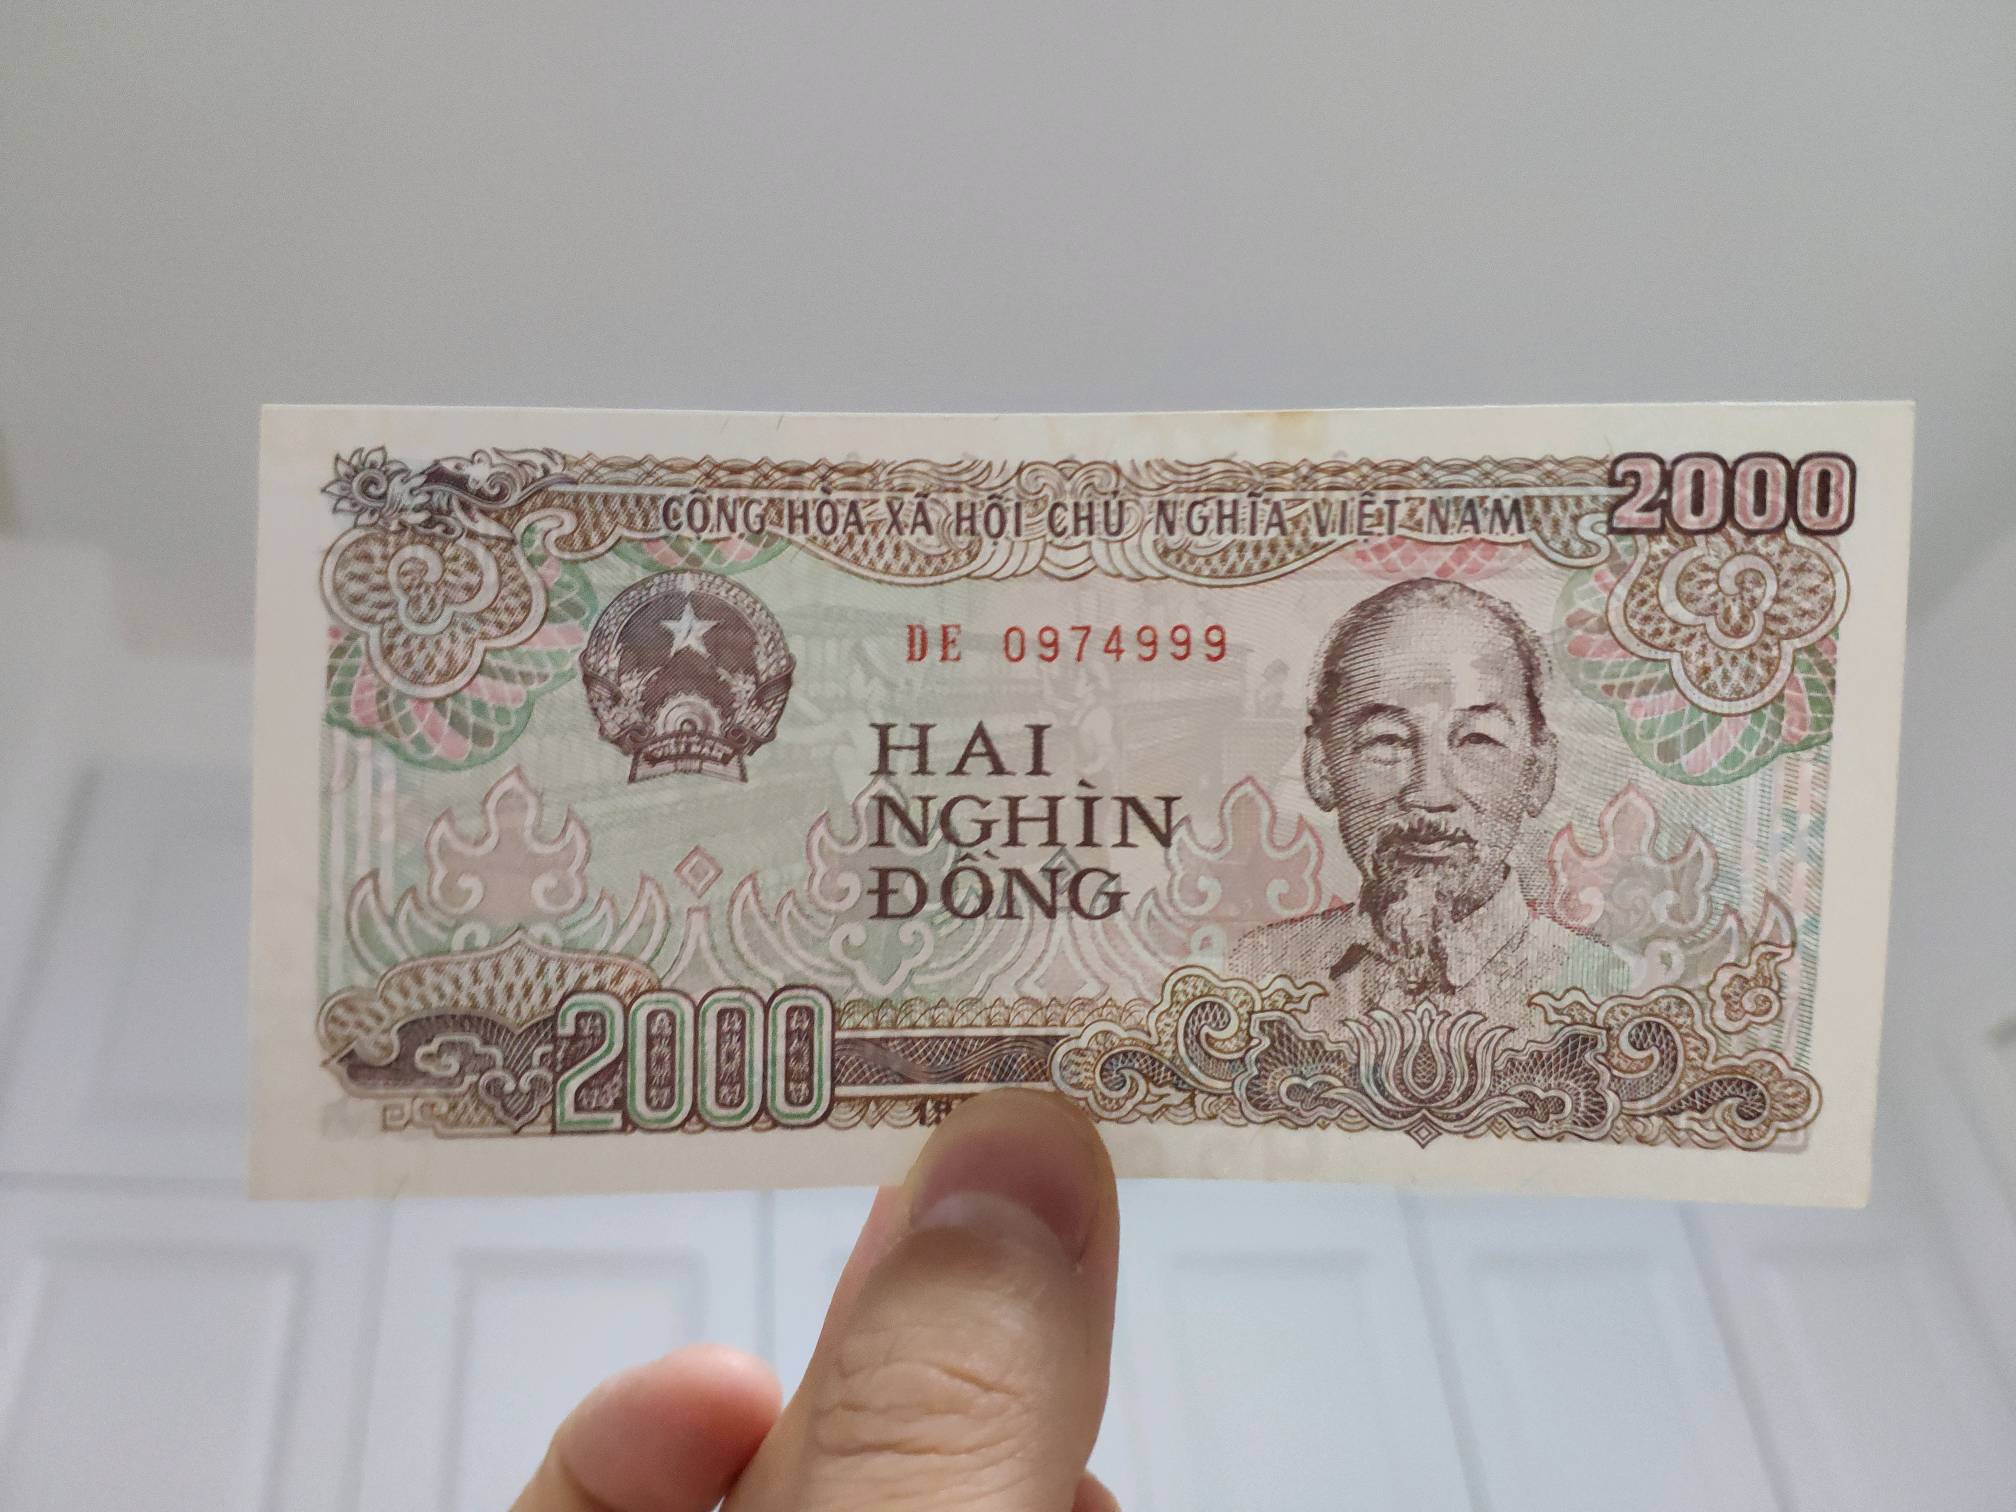 越南盾纸币一张,面值2000的